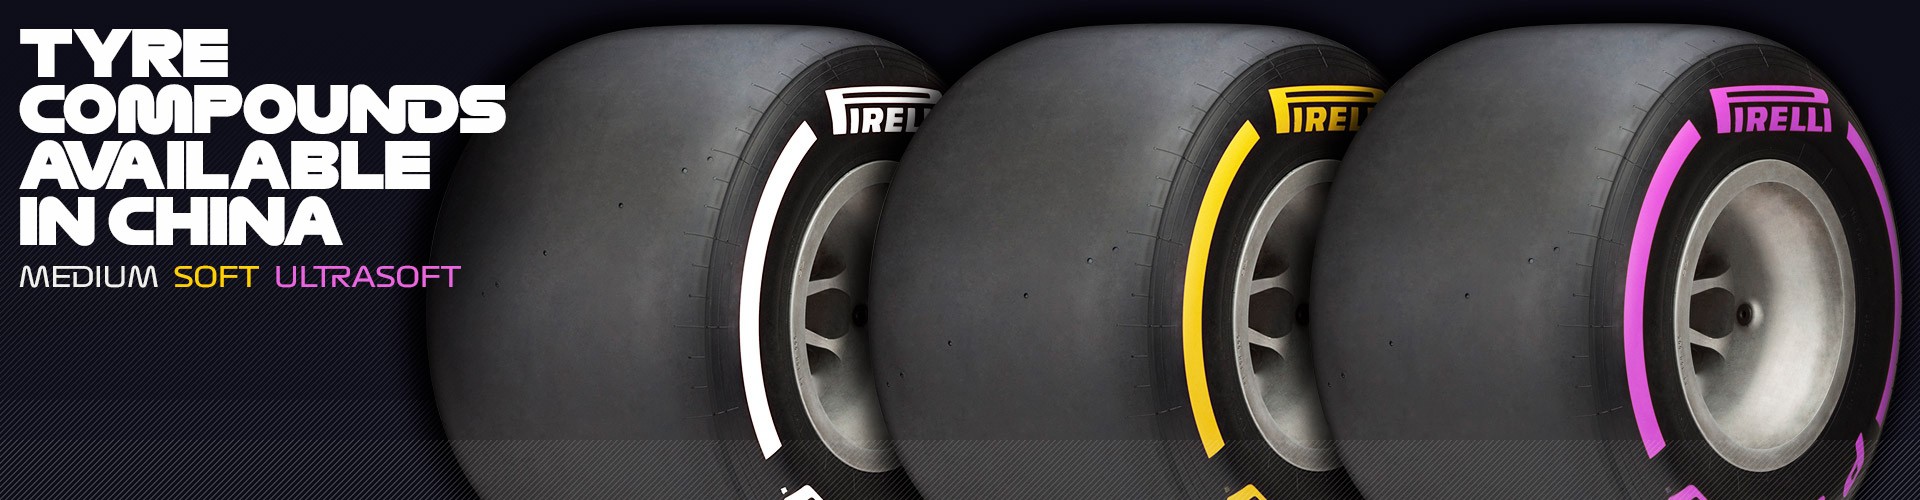 Hình ảnh: Serie 3 mẫu lốp Pirelli cung cấp ở China GP năm nay